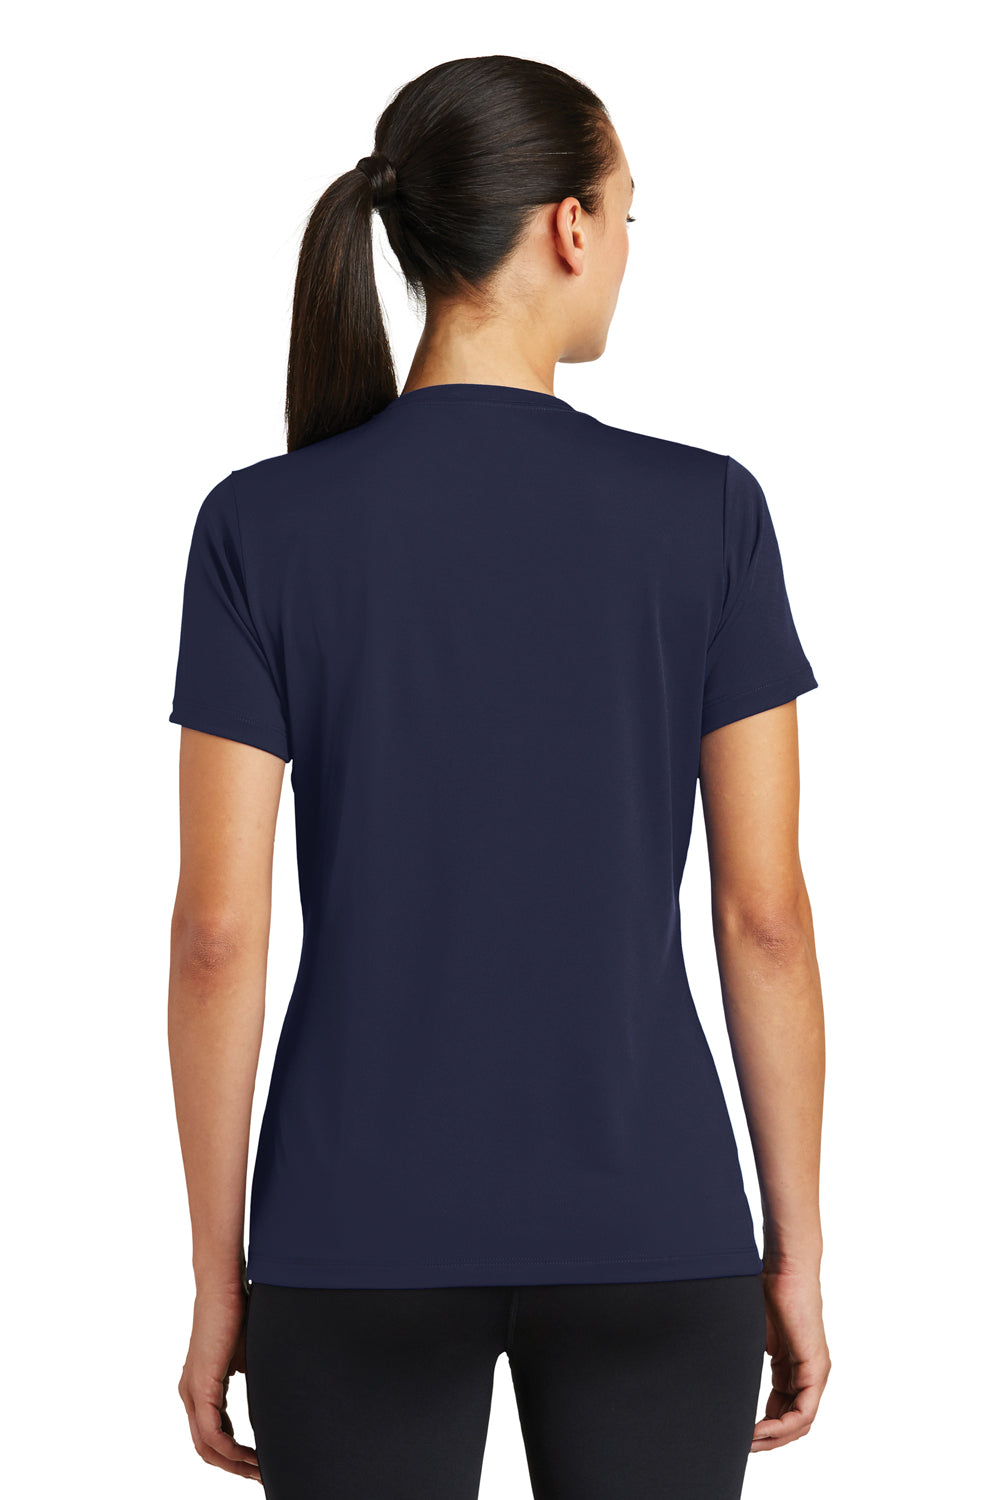 Sport-Tek LST320 Womens Tough Moisture Wicking Short Sleeve Crewneck T-Shirt Navy Blue Back